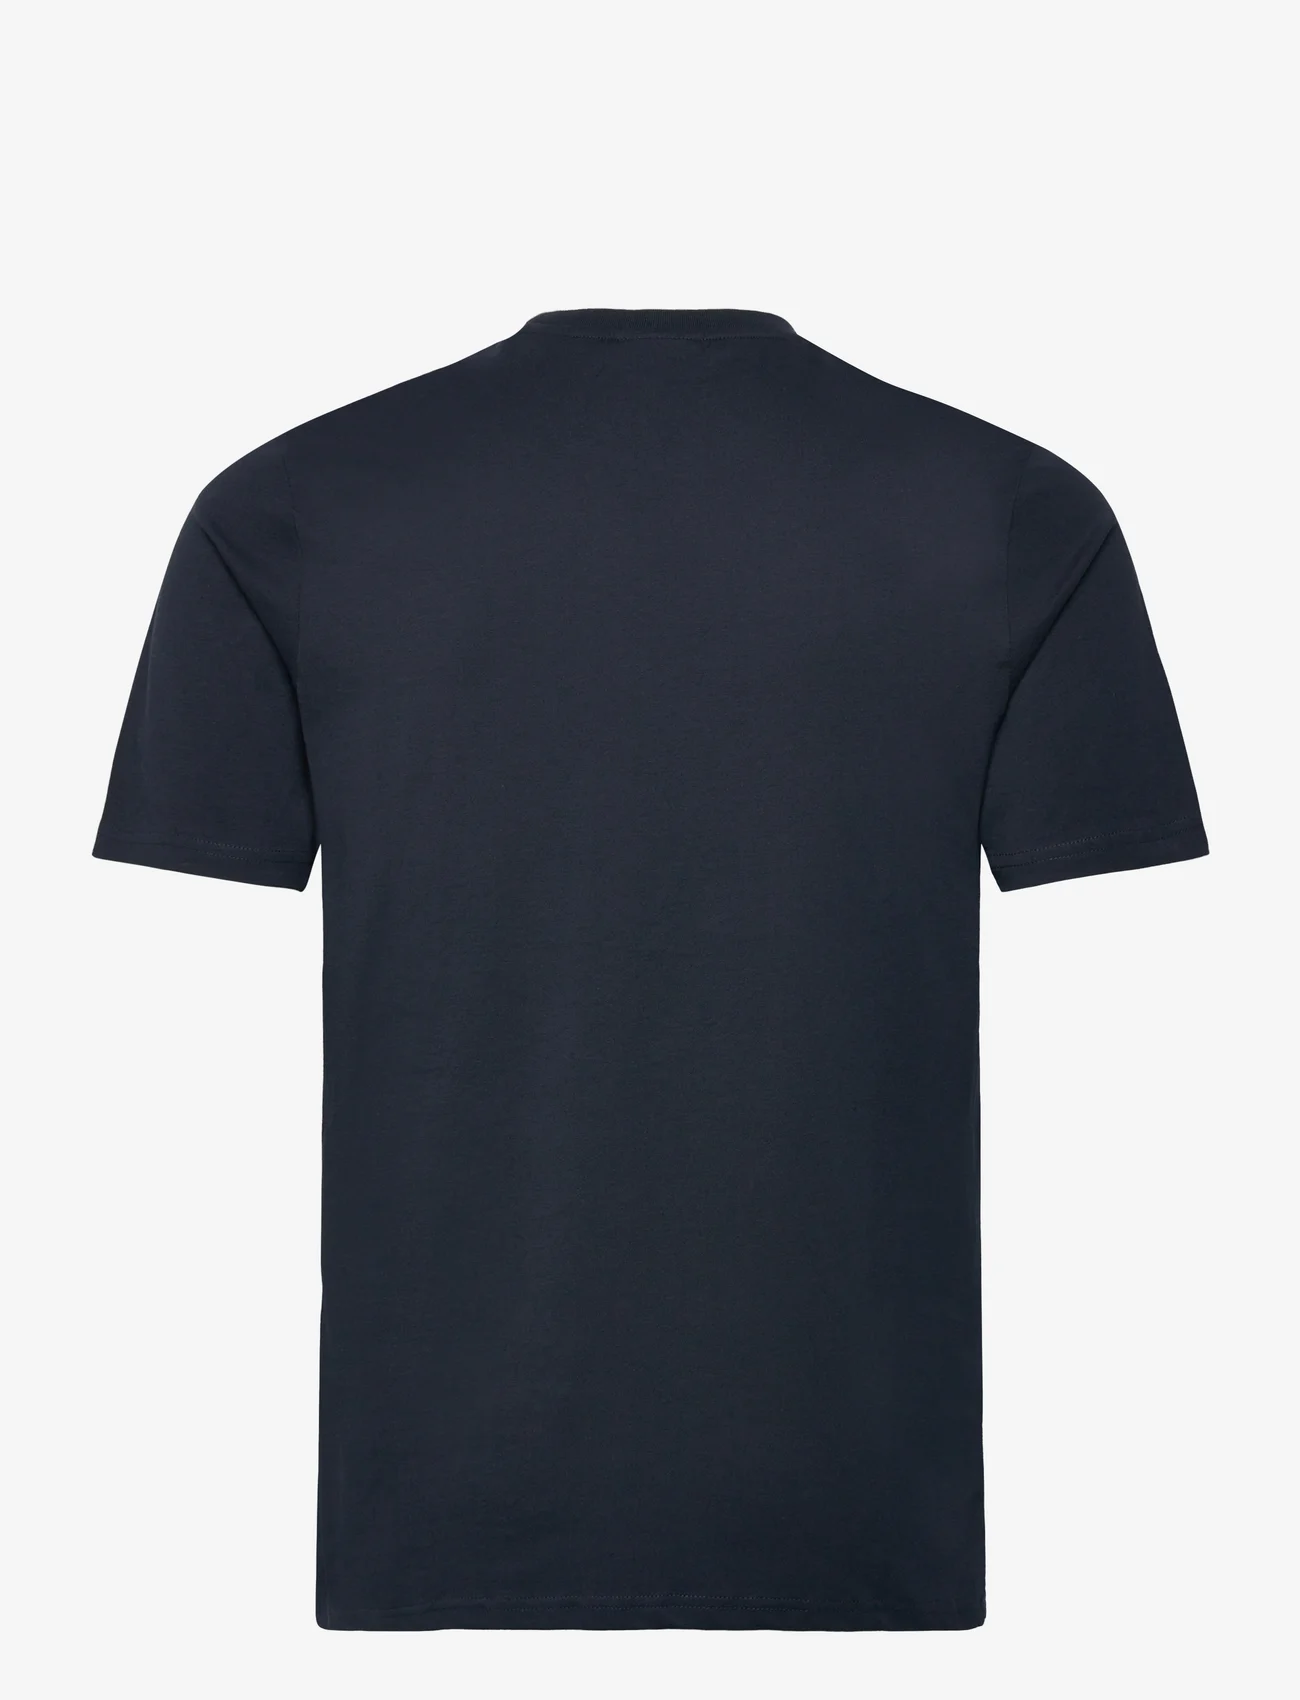 Lyle & Scott - Pocket T-Shirt - short-sleeved t-shirts - z271 dark navy - 1